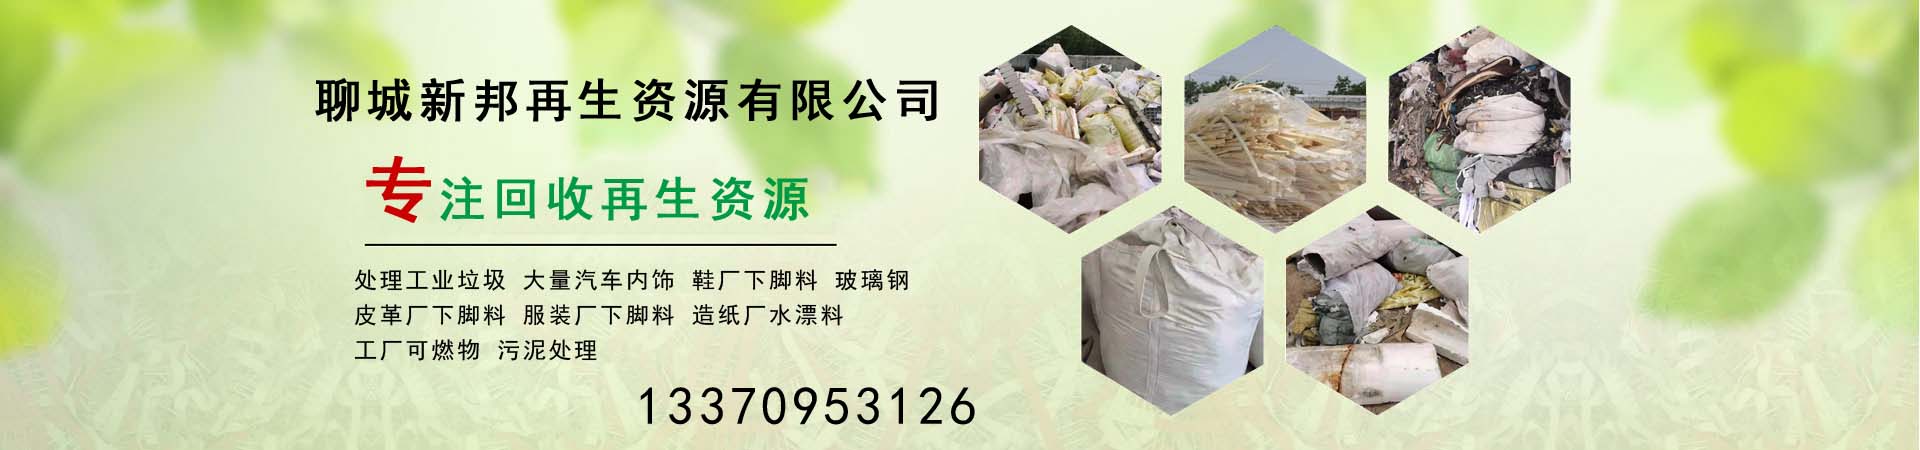 造纸厂水漂料处理、许昌本地造纸厂水漂料处理、许昌、许昌造纸厂水漂料处理